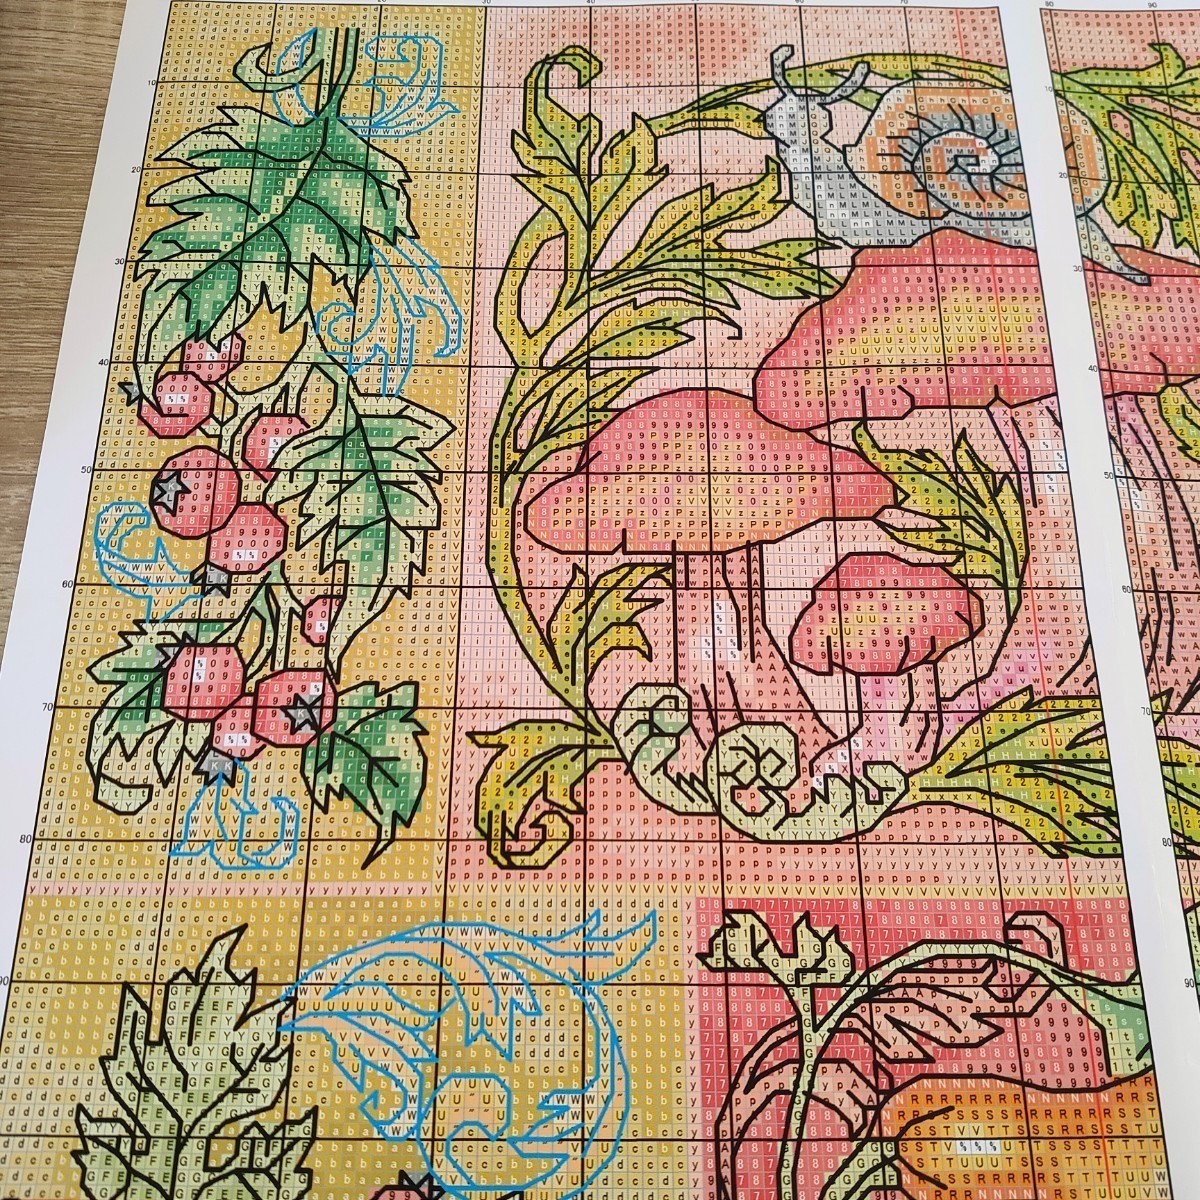 クロスステッチキット Elements of autumn 秋 キノコ モチーフ 14CT 34×46cm 図案印刷あり 刺繍